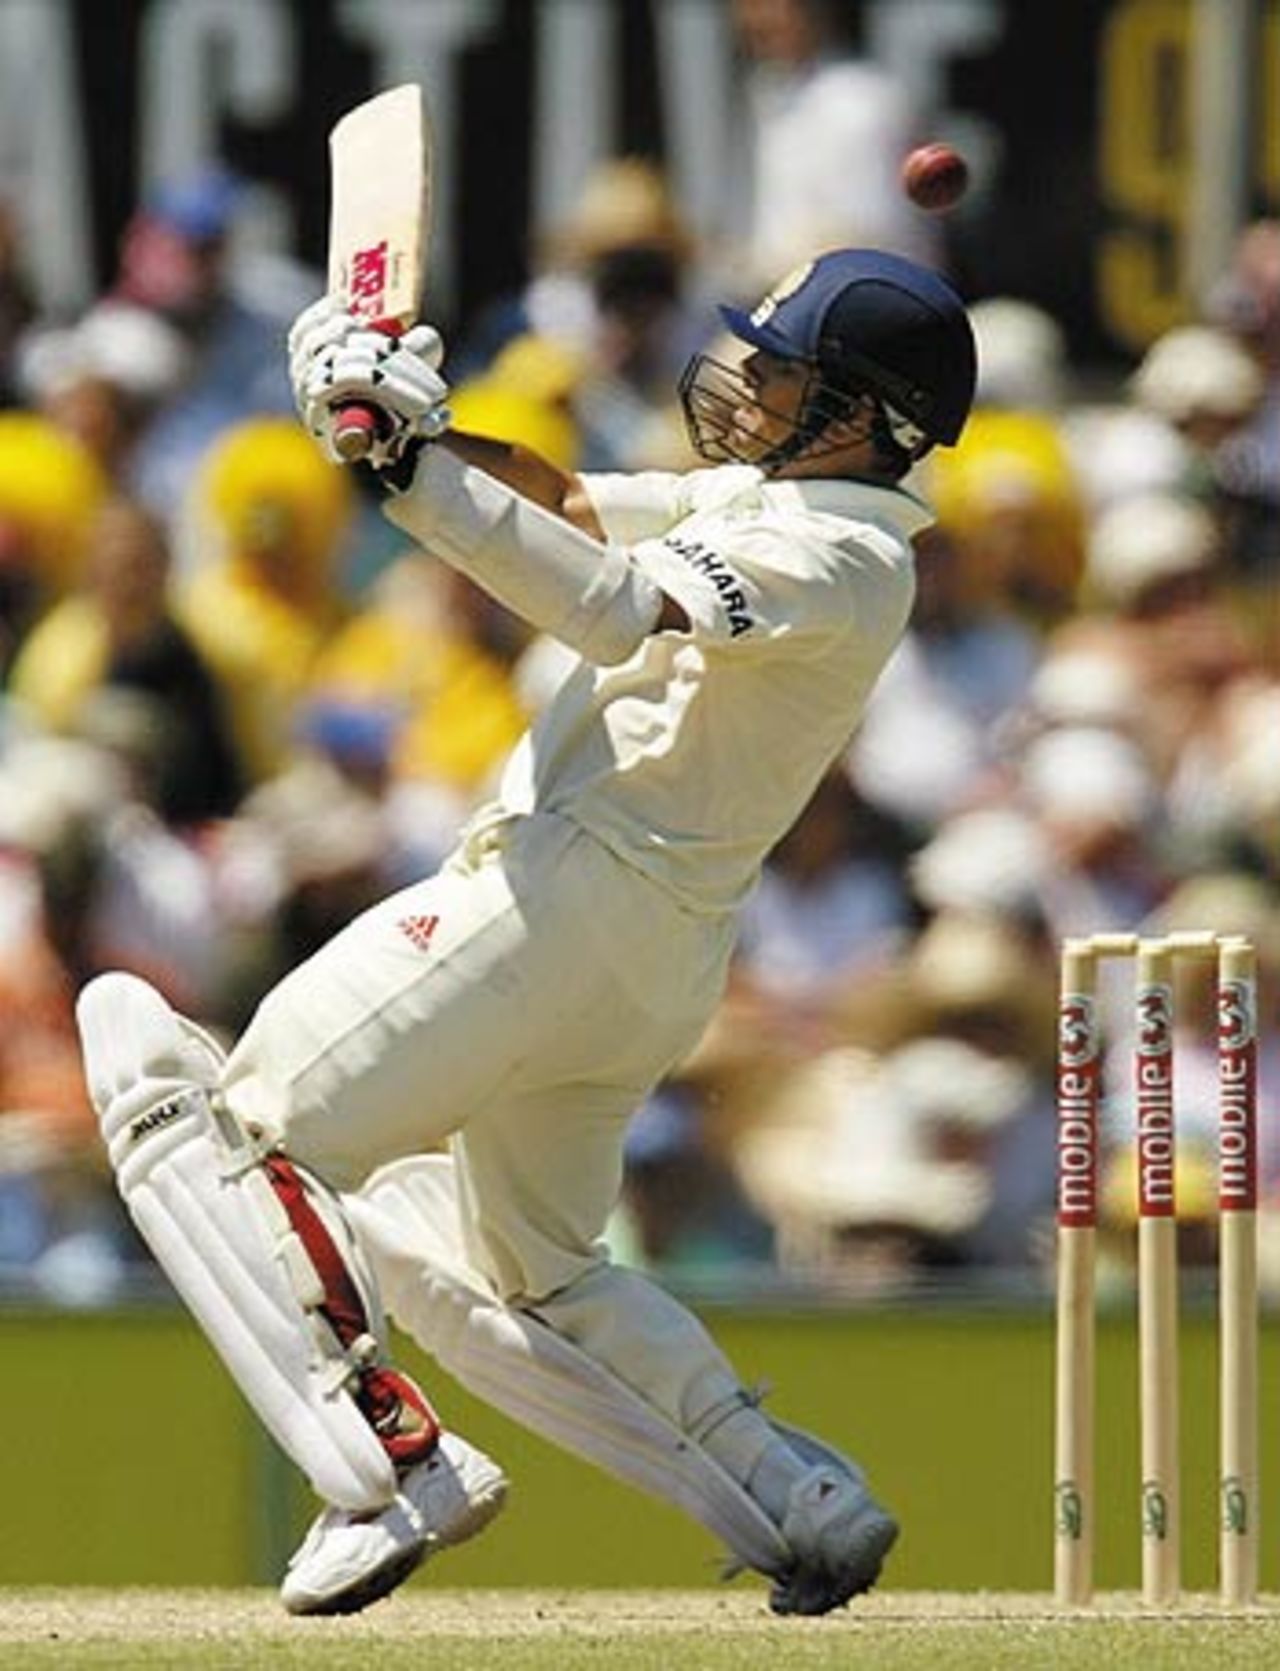 Sachin Tendulkar carves the ball over the slips, Australia v India, 4th Test, Sydney, 3rd day, January 4, 2004